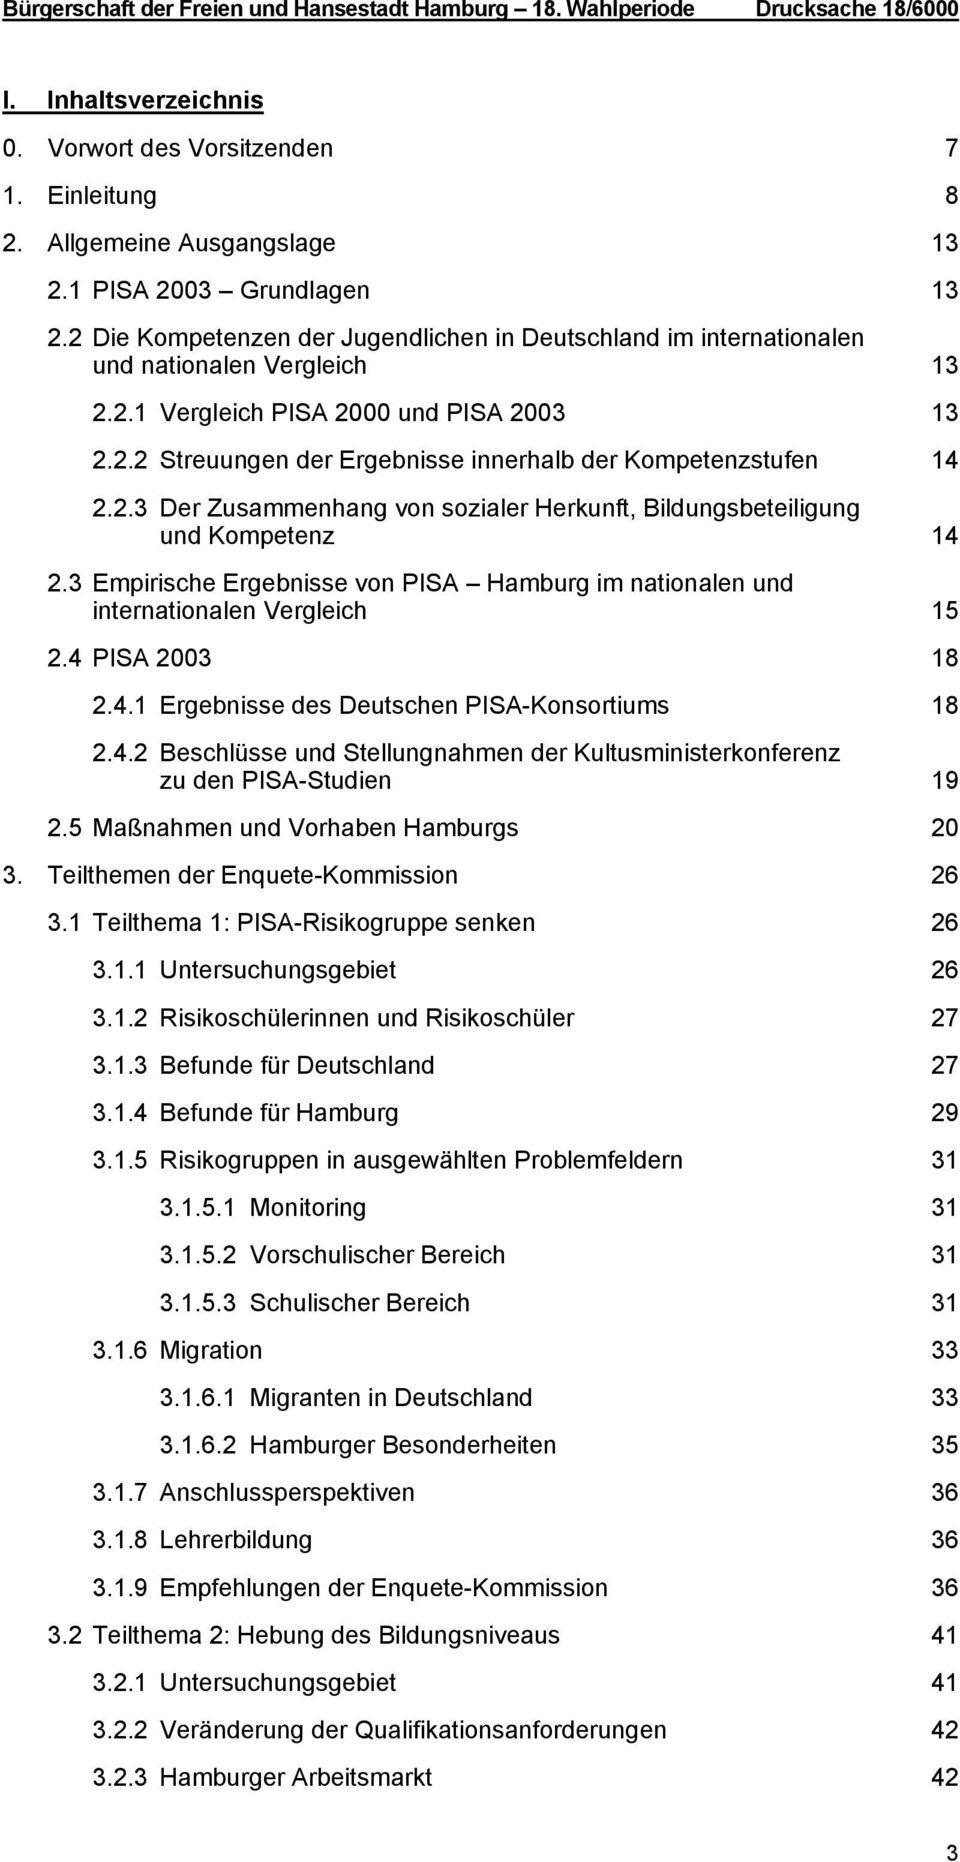 2.3 Der Zusammenhang von sozialer Herkunft, Bildungsbeteiligung und Kompetenz 14 2.3 Empirische Ergebnisse von PISA Hamburg im nationalen und internationalen Vergleich 15 2.4 PISA 2003 18 2.4.1 Ergebnisse des Deutschen PISA-Konsortiums 18 2.